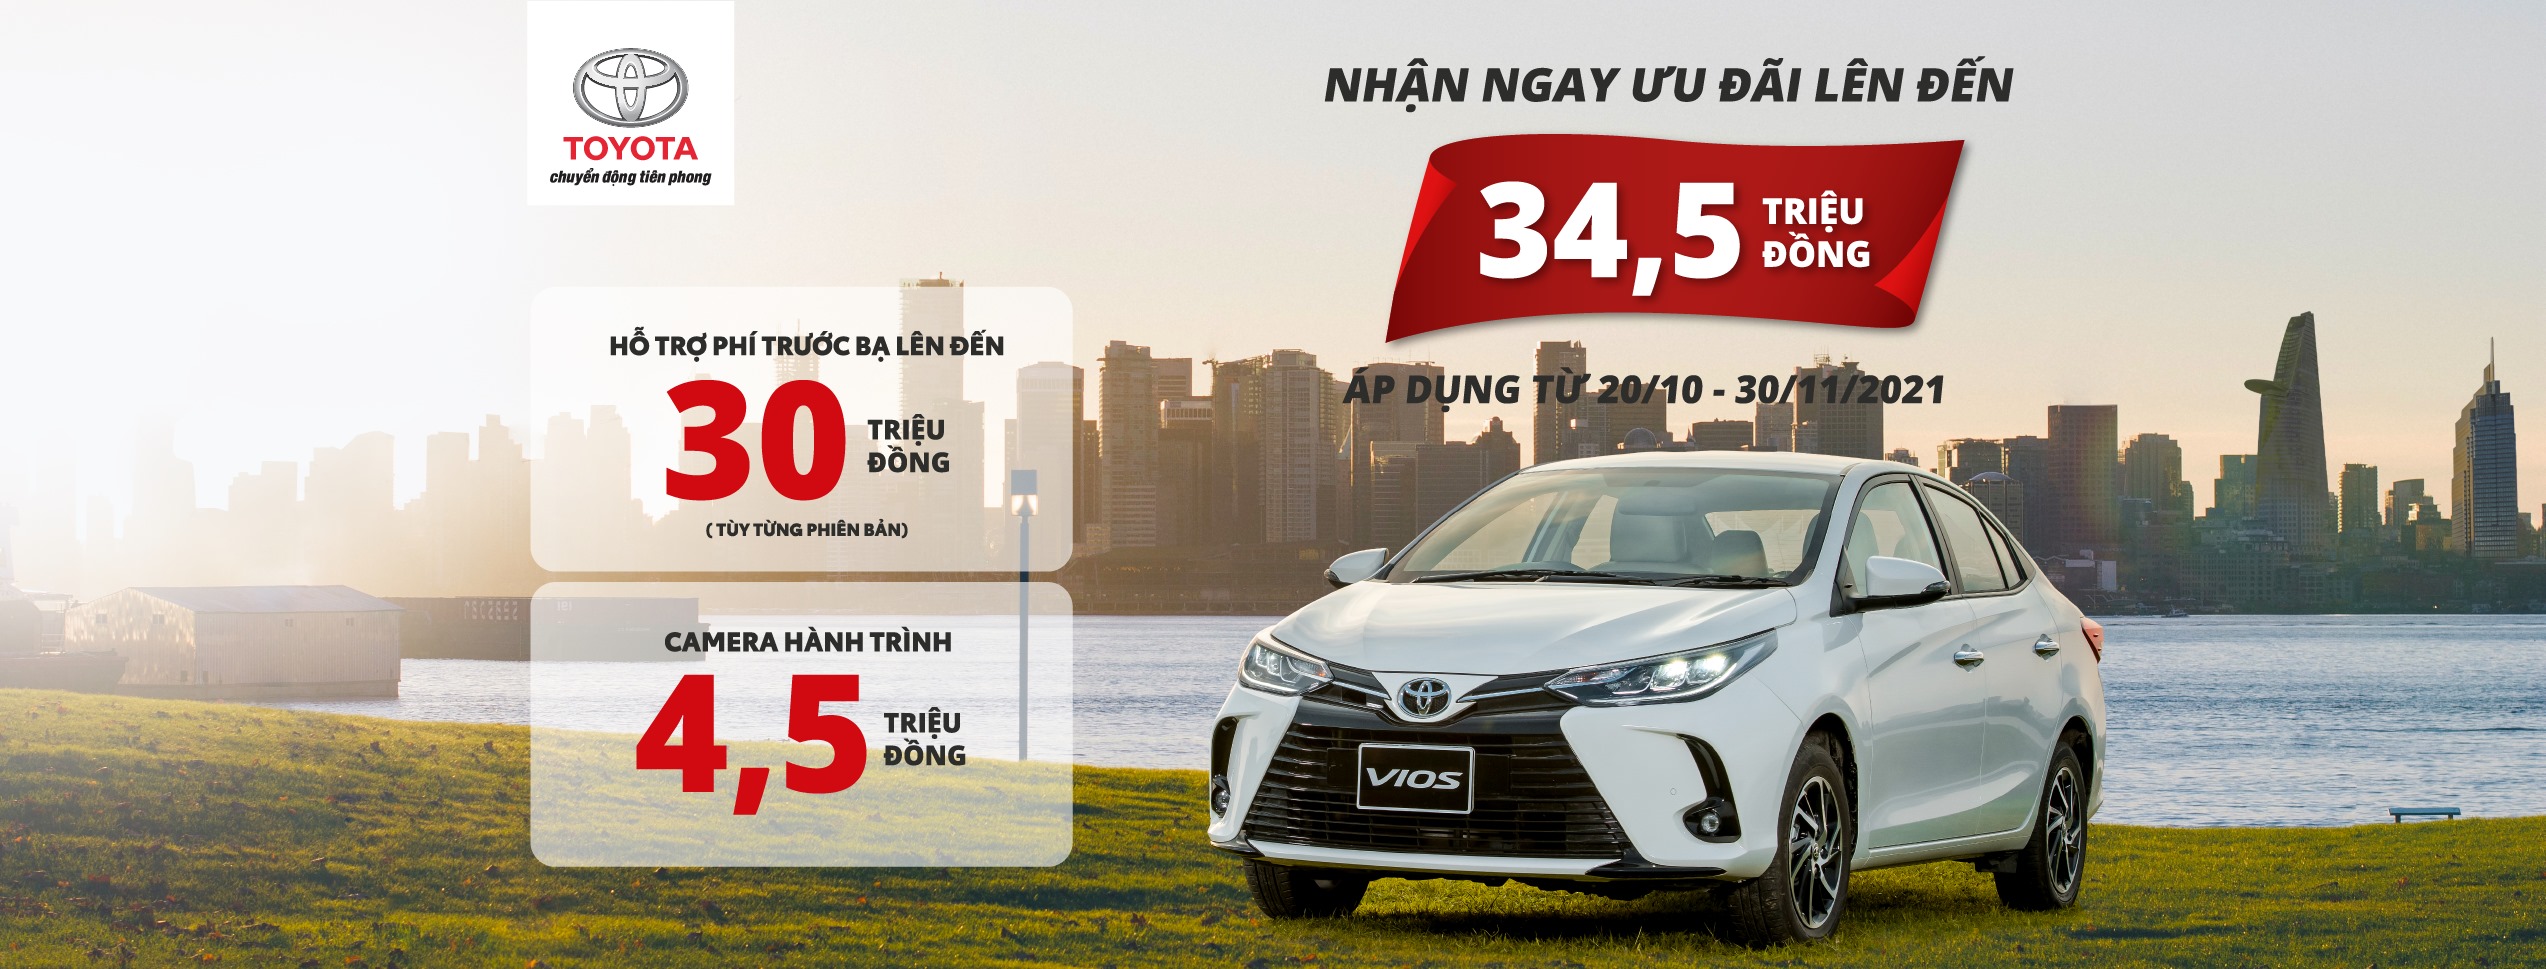 Toyota Cẩm Phả triển khai chương trình ưu đãi dành cho Vios lên tới 34,5 triệu đồng